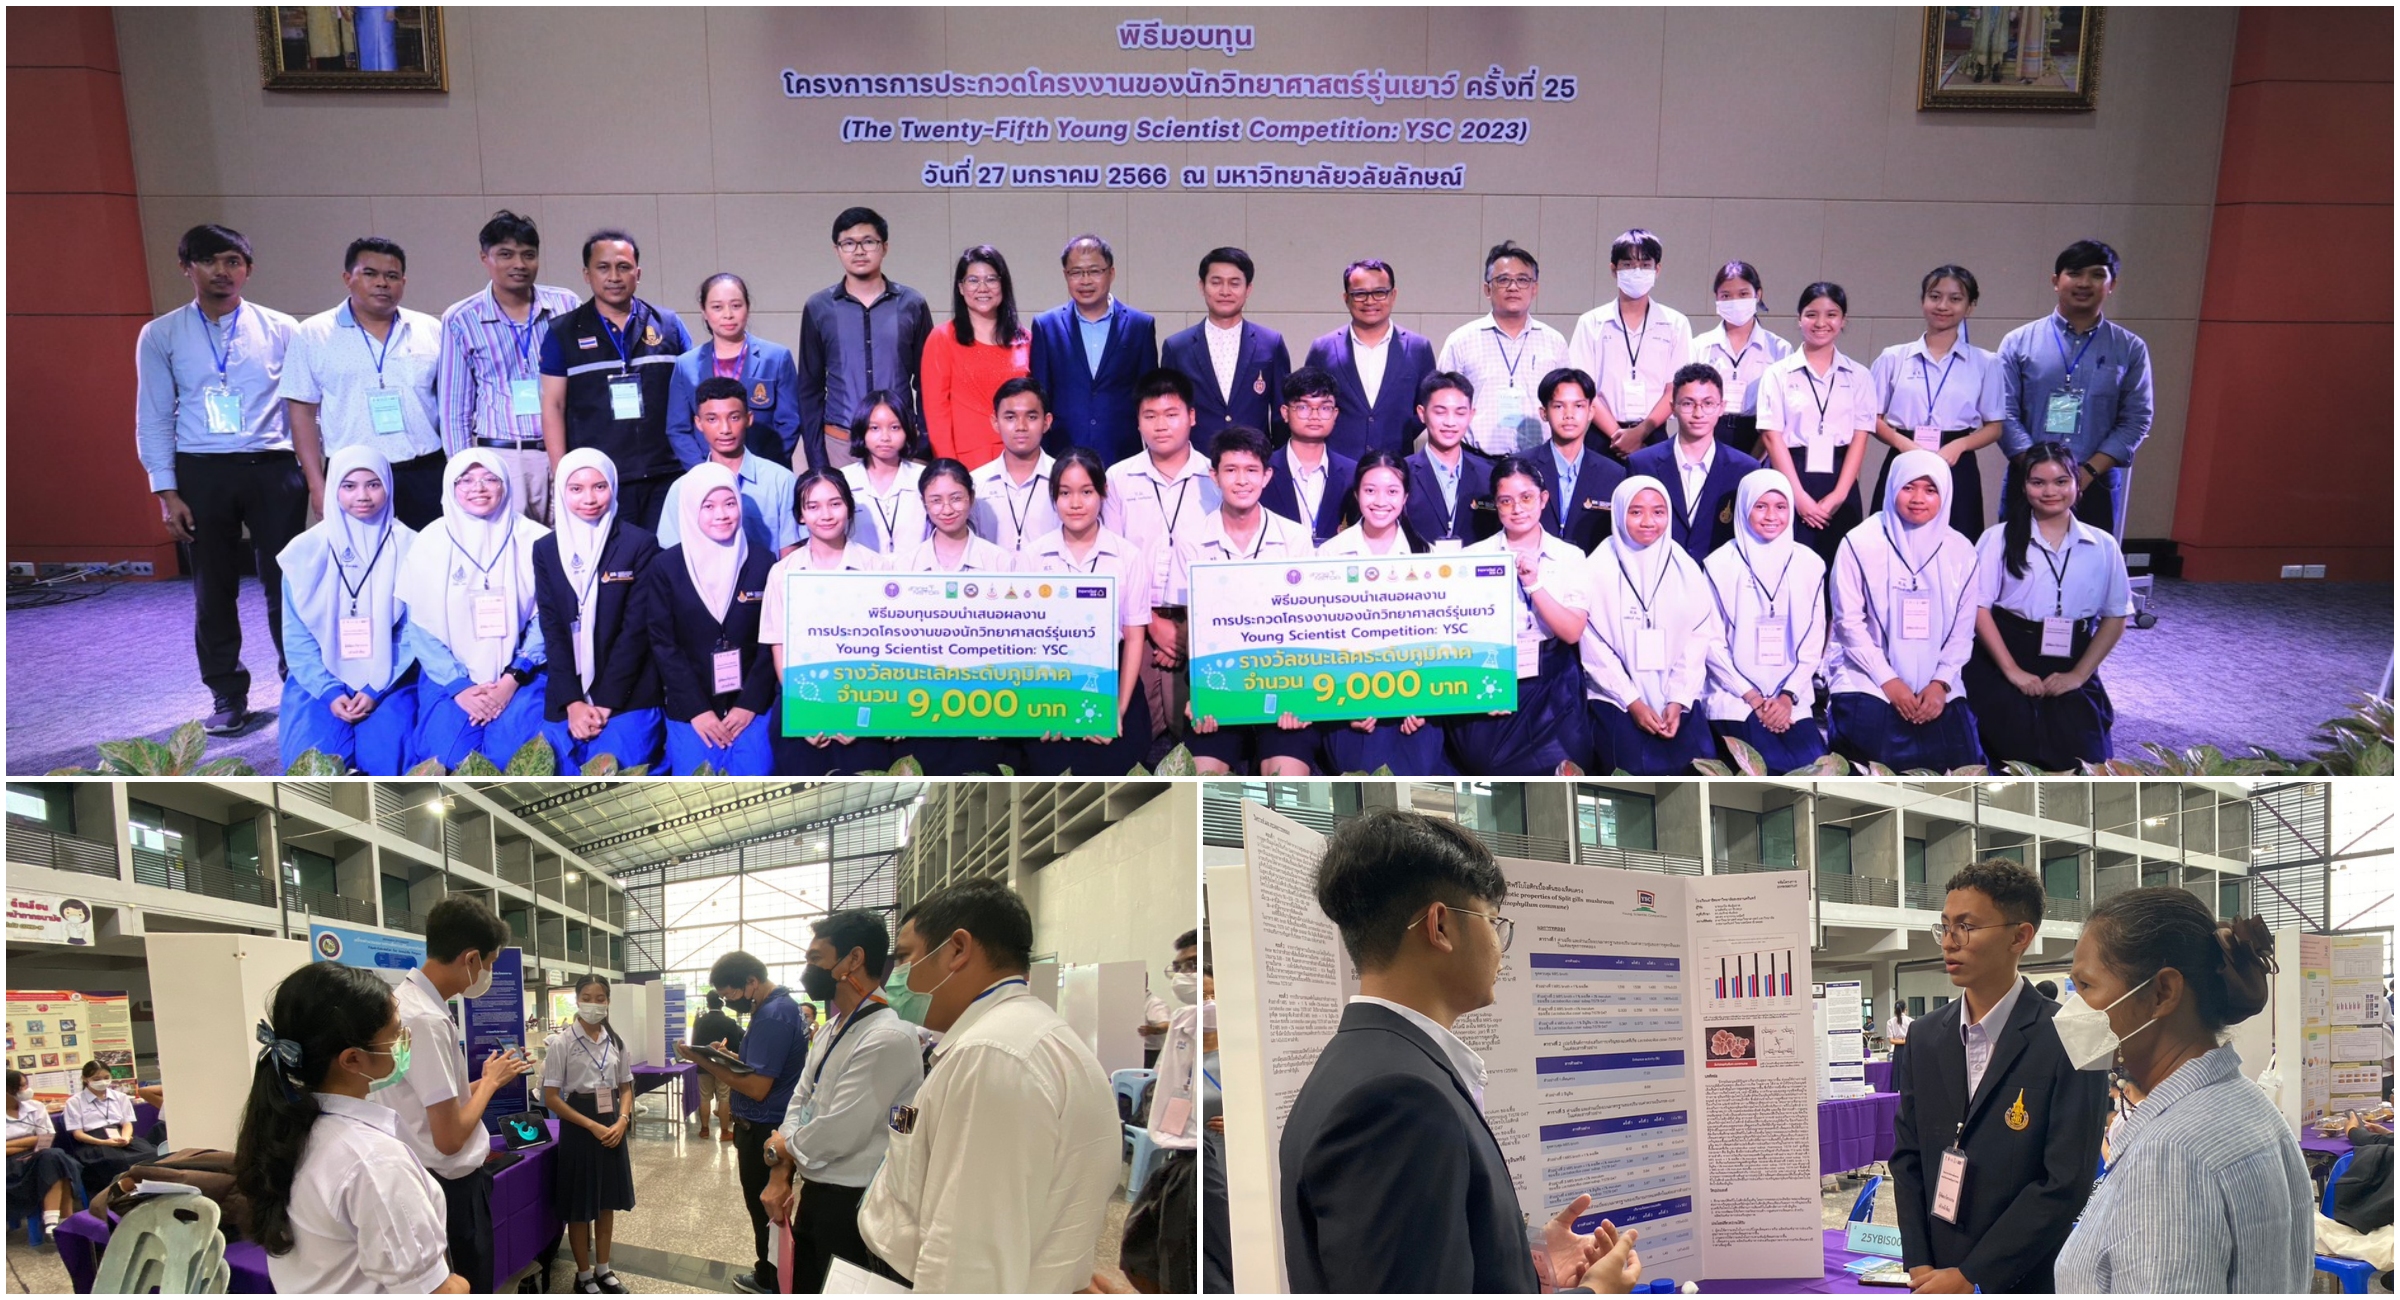 มหาวิทยาลัยวลัยลักษณ์ ขอแสดงความยินดีกับเยาวชนไทยคนเก่ง โครงการ YSC คว้ารางวัลบนเวทีโลก “ISEF 2023” ณ ประเทศสหรัฐอเมริกา